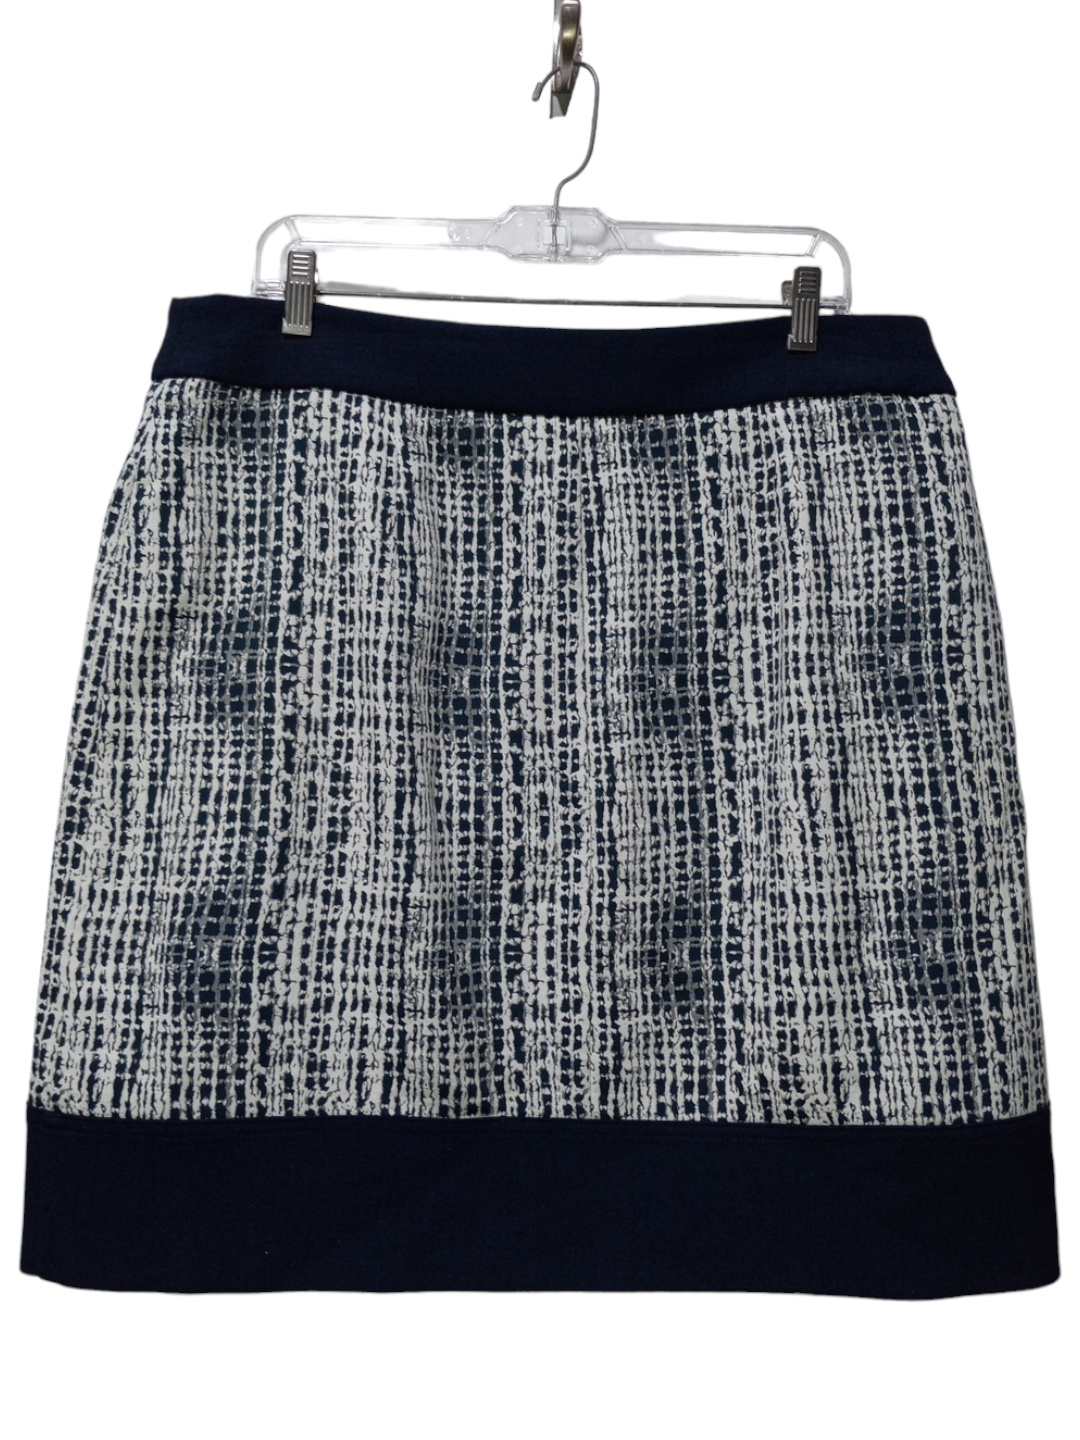 Blue & White Skirt Midi Jones New York, Size 12